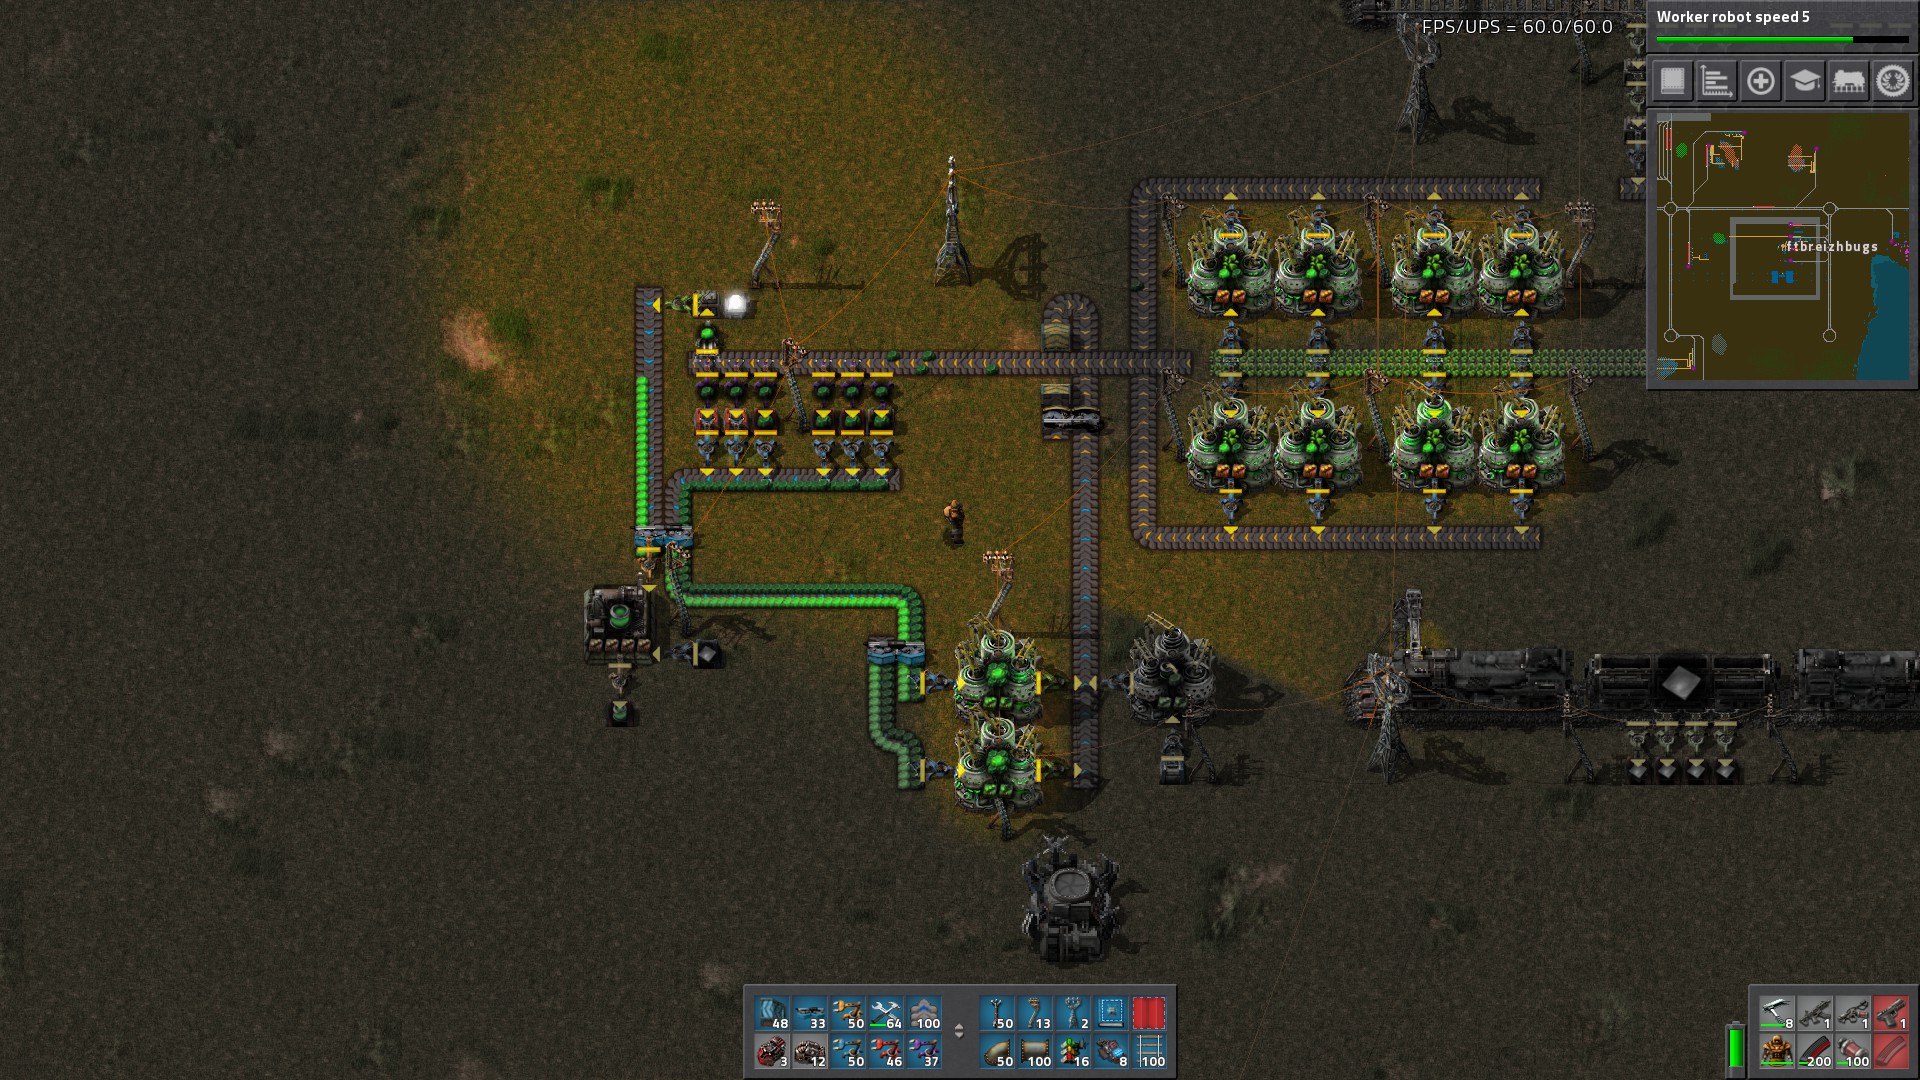 Here is my simple uranium setup!